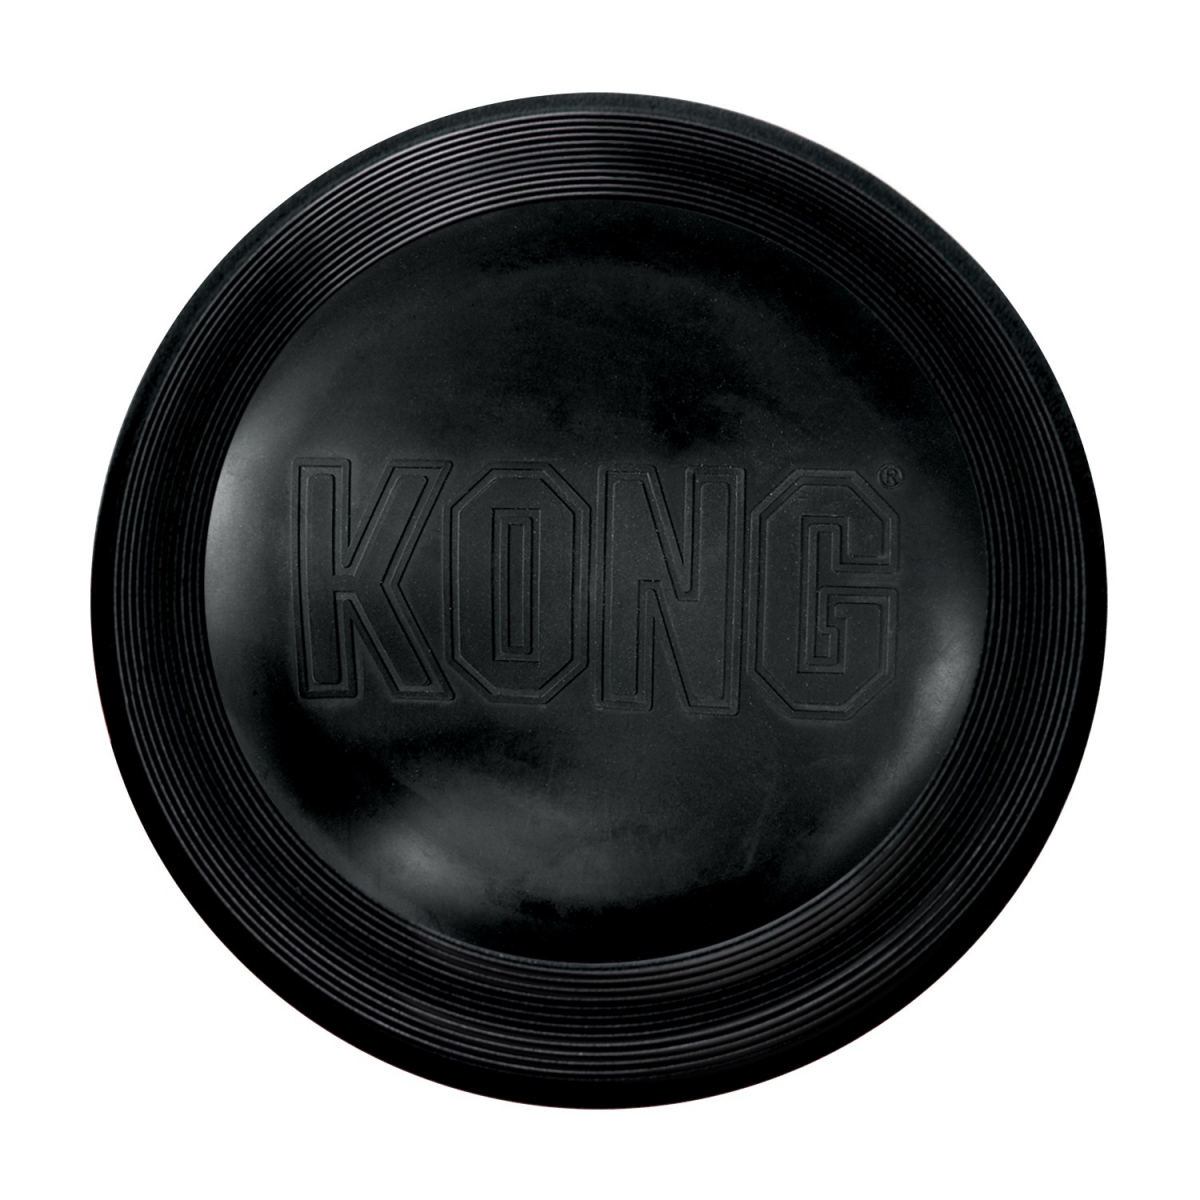 KONG chien Extreme Flyer - frisbee pliable très résistant